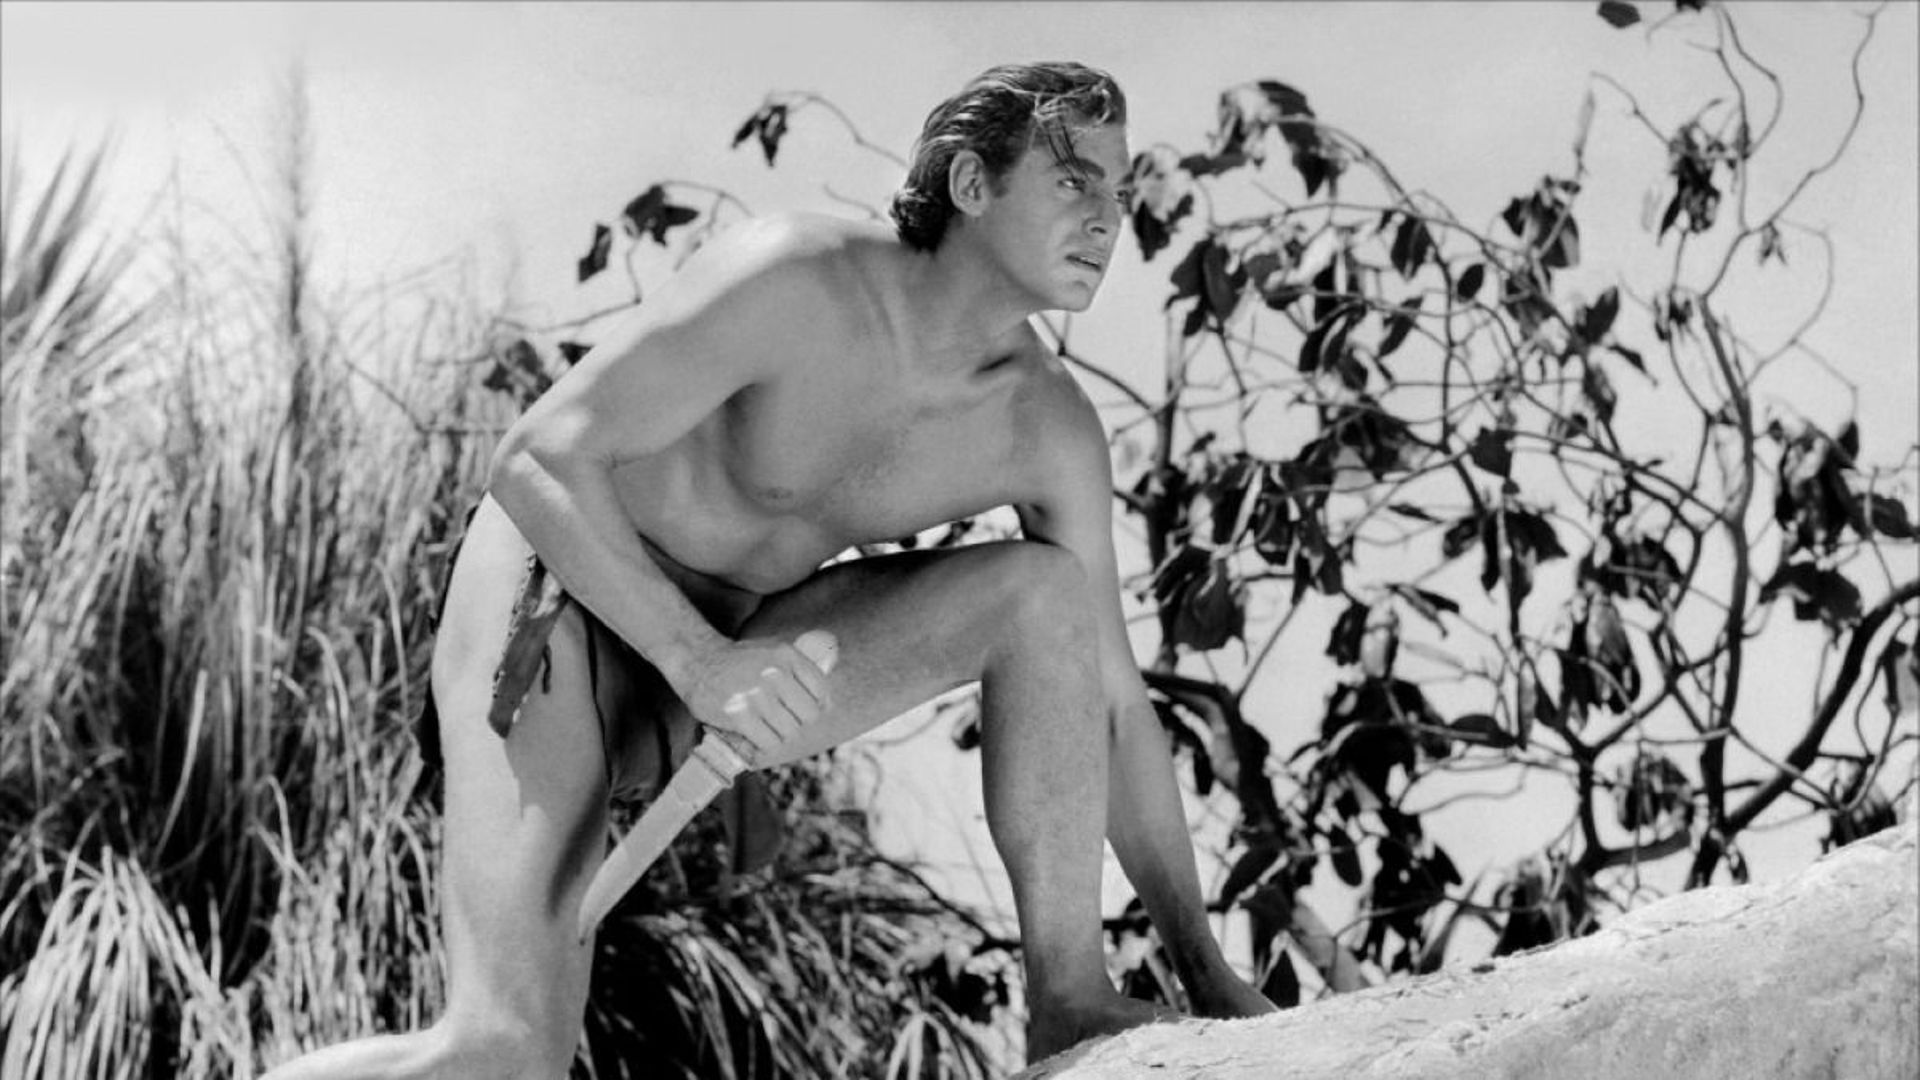 Tarzan et son physique de nageur olympique